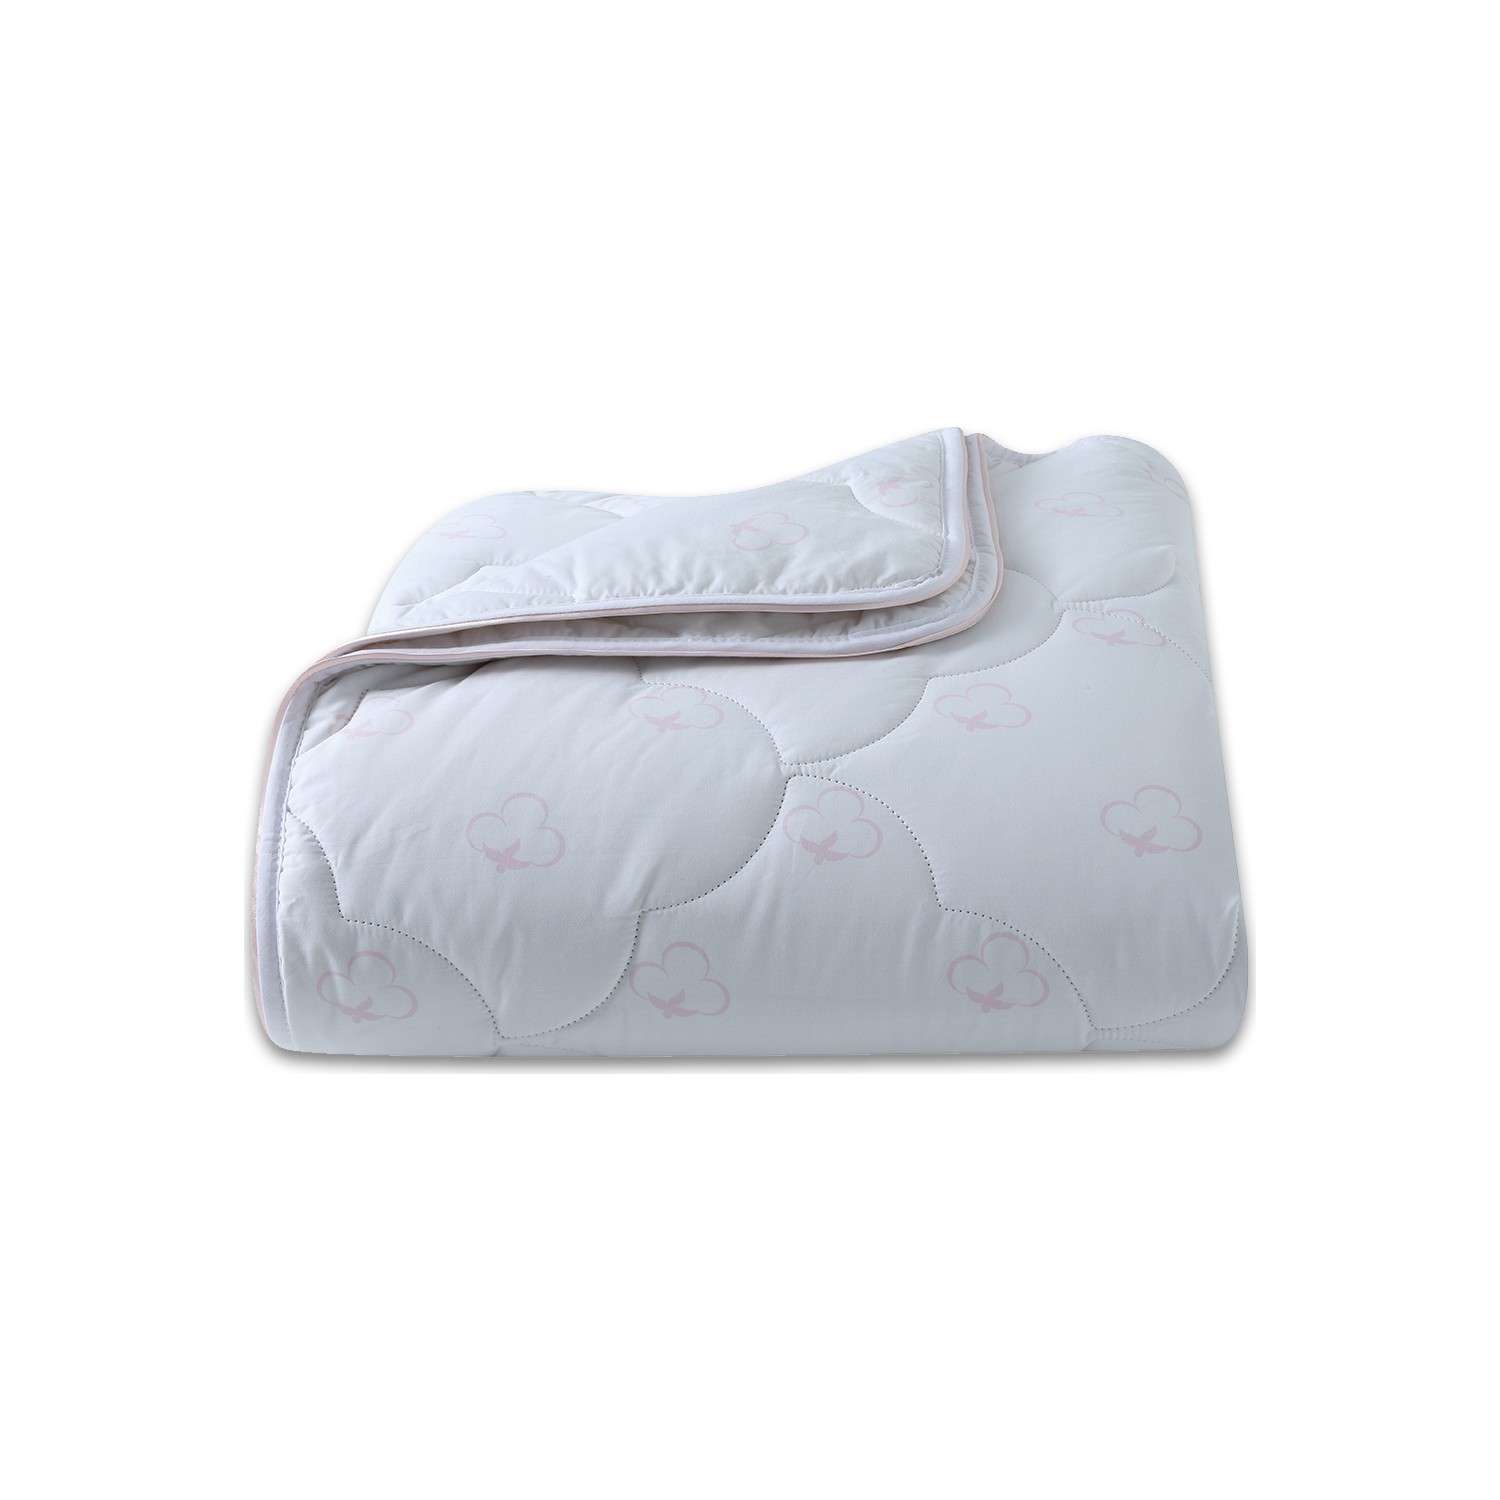 Одеяло детское стеганое Yatas Bedding хлопковое 95x145 см Cotton 300 г/м2 - фото 1